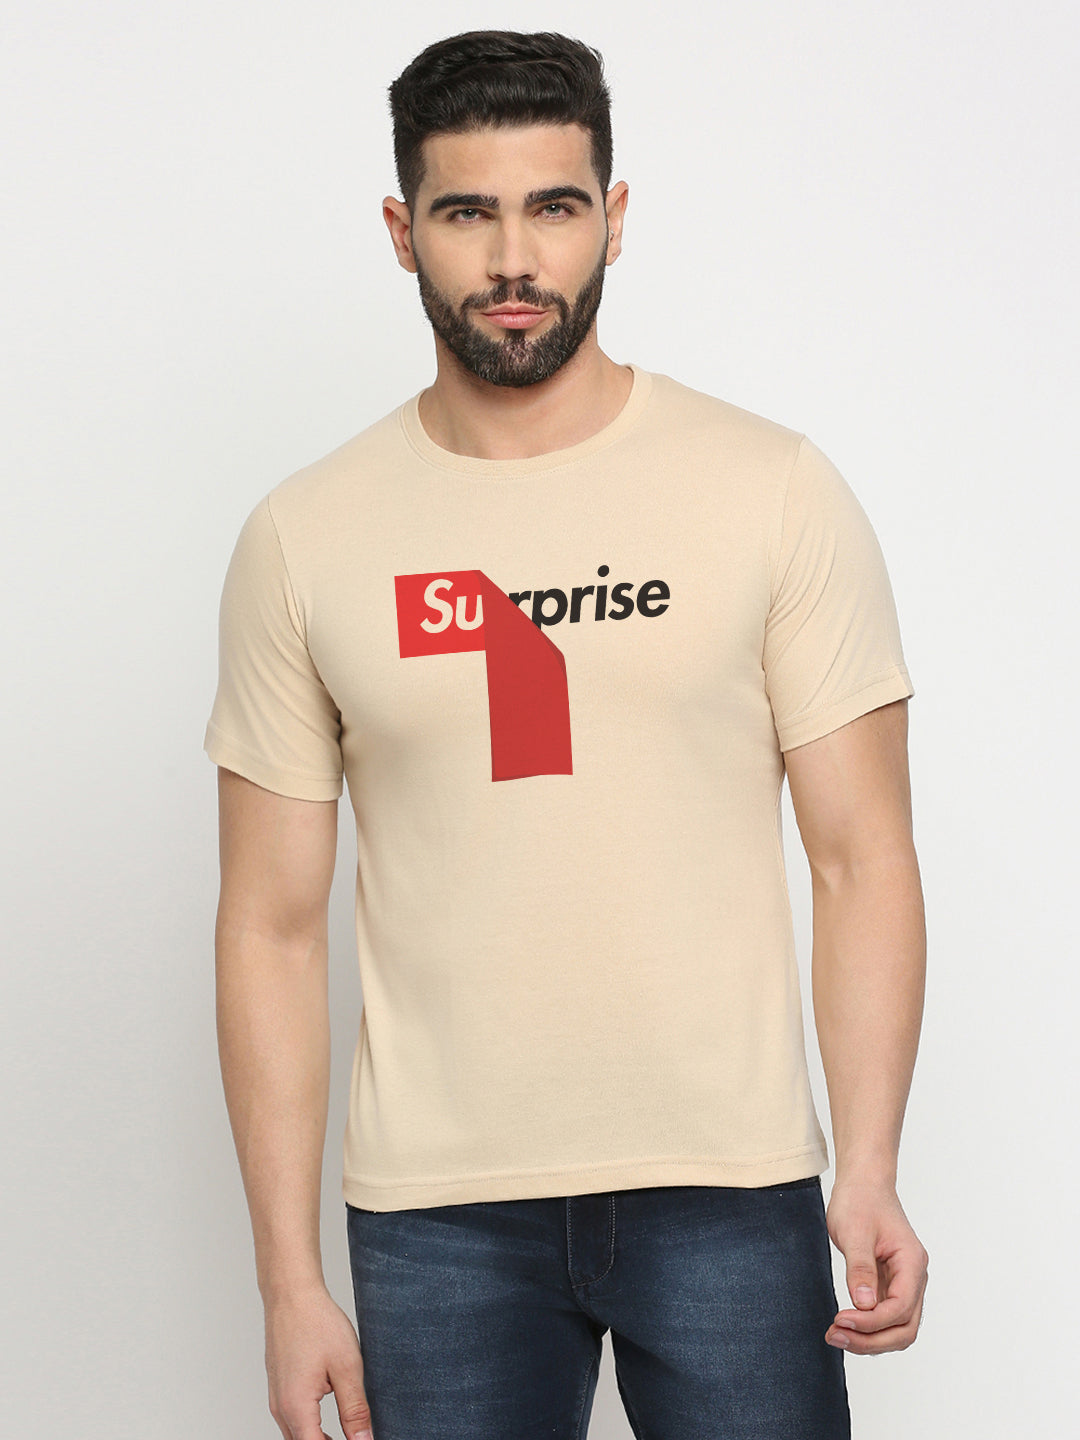 Surprise T-Shirt